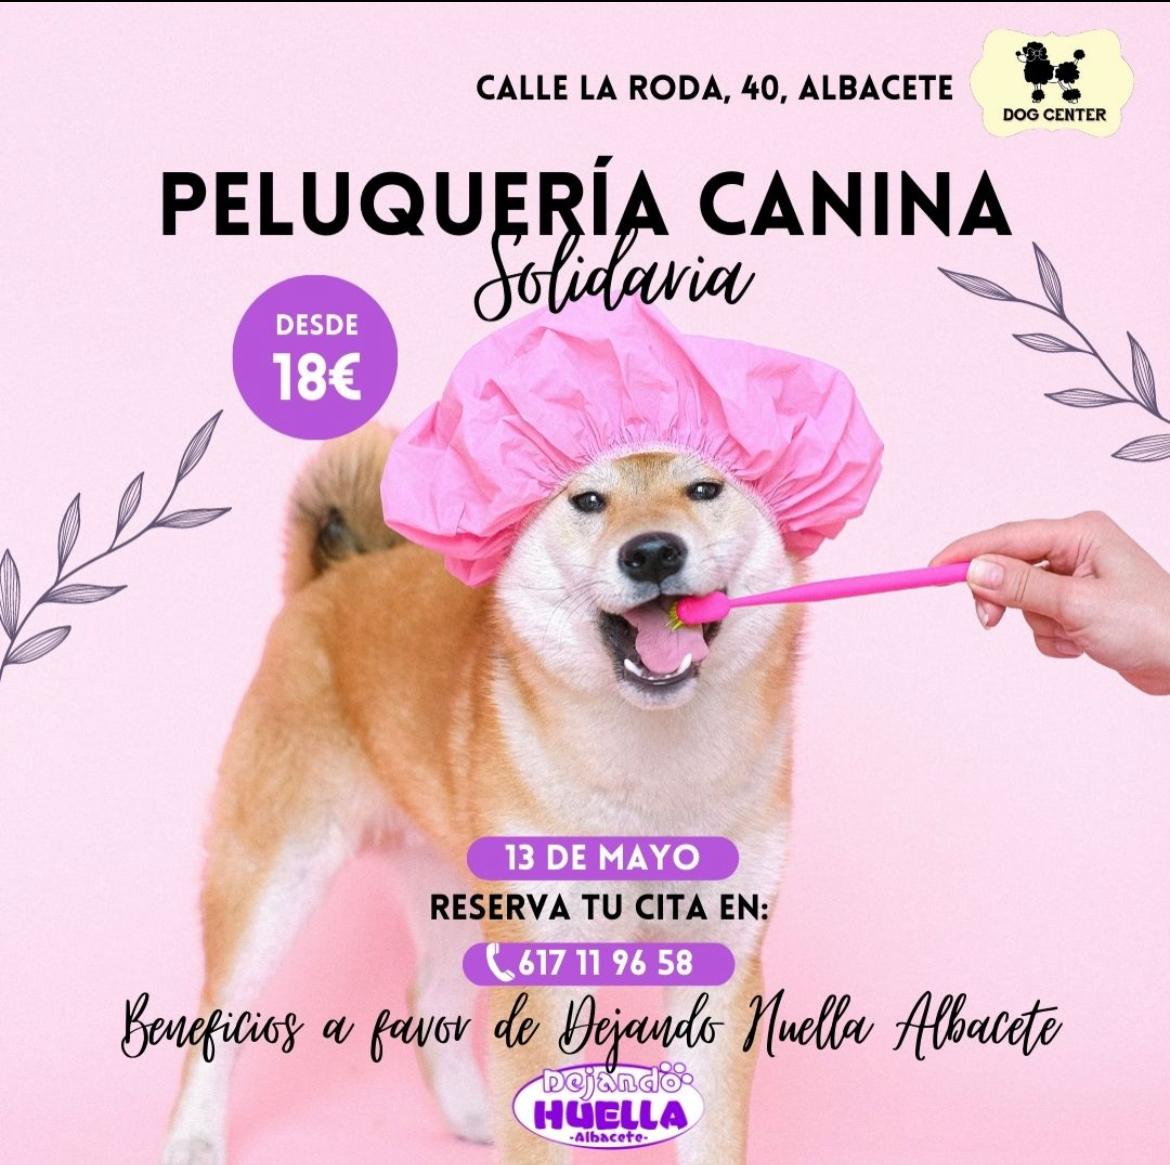 Vuelve la peluquería canina solidaria en Dejando Huella Albacete